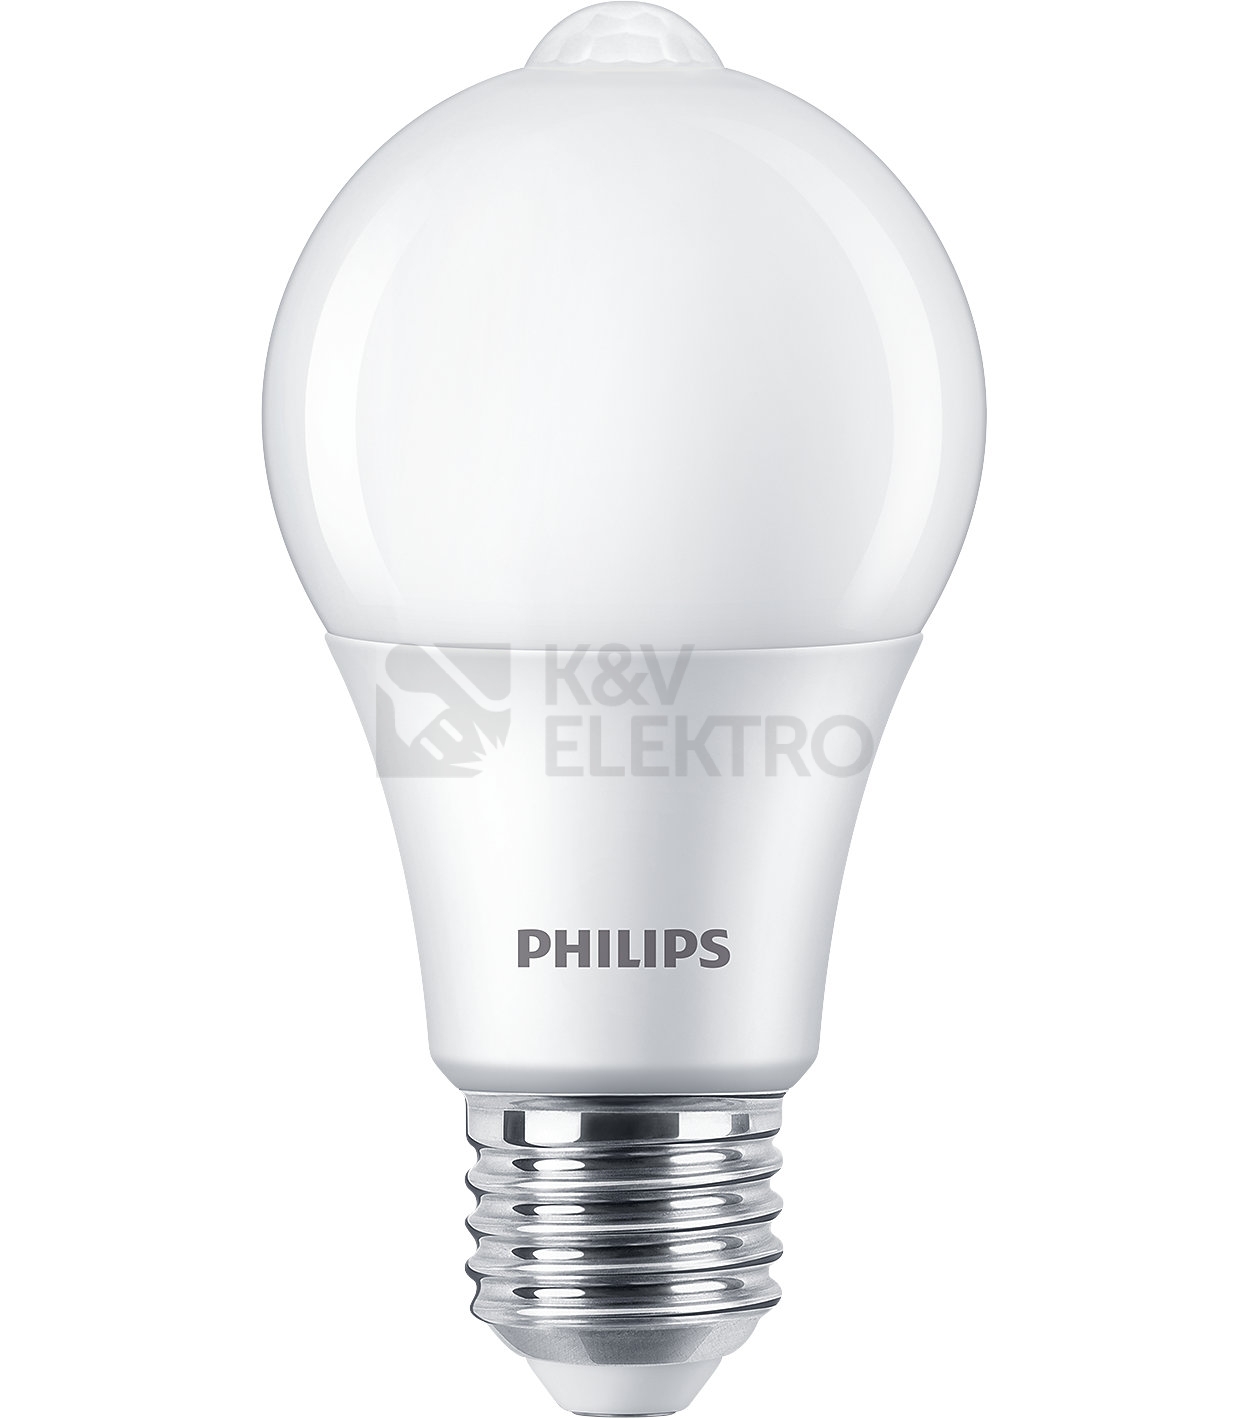 Obrázek produktu LED žárovka E27 Philips A60 8W (60W) teplá bílá (2700K) s pohybovým čidlem 0